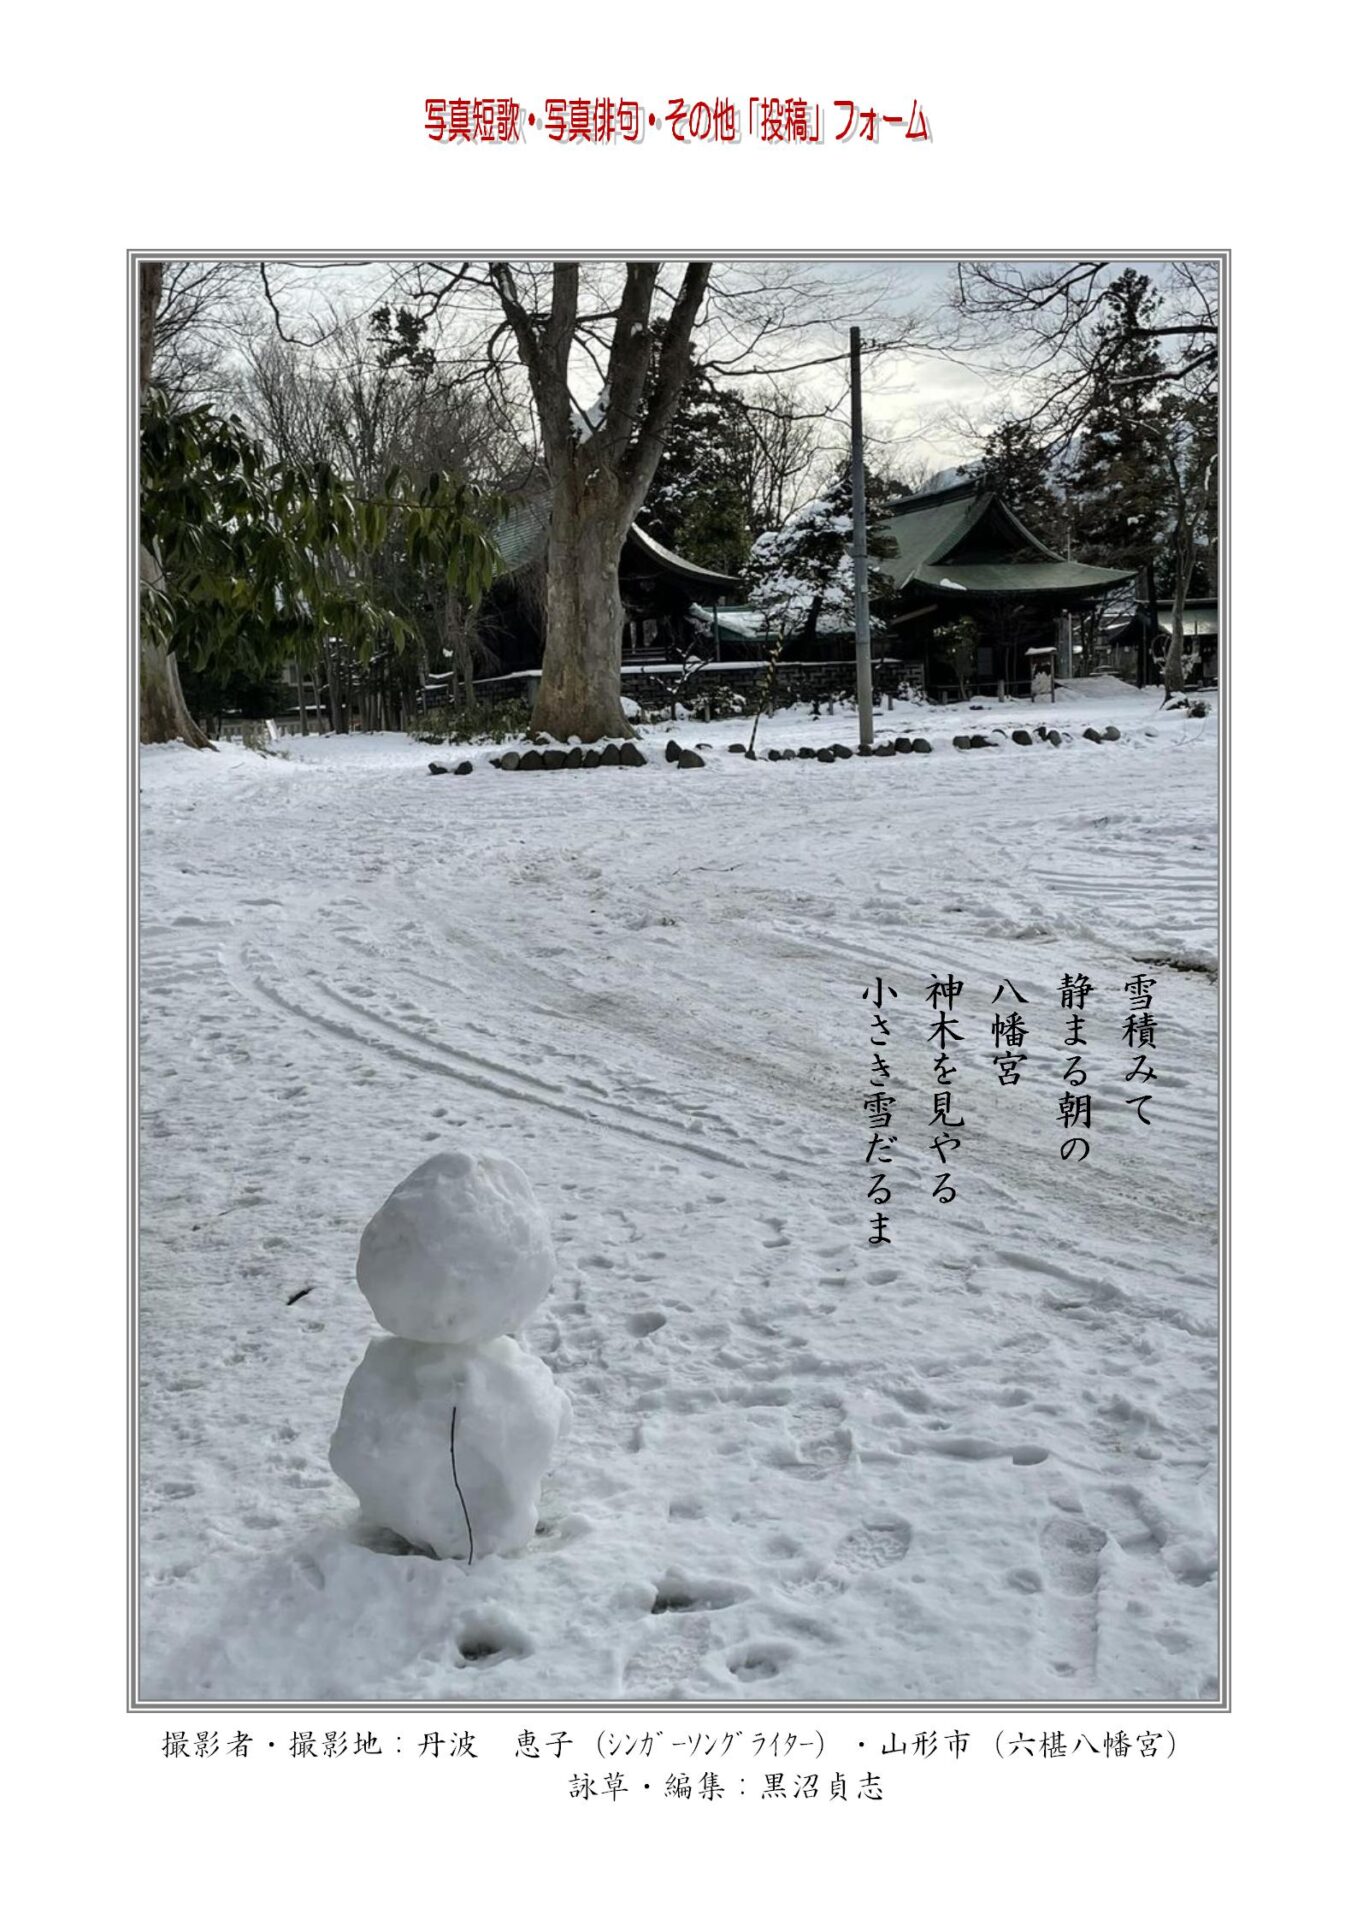 雪積みて静まる朝の八幡宮神木を見やる小さき雪だるま